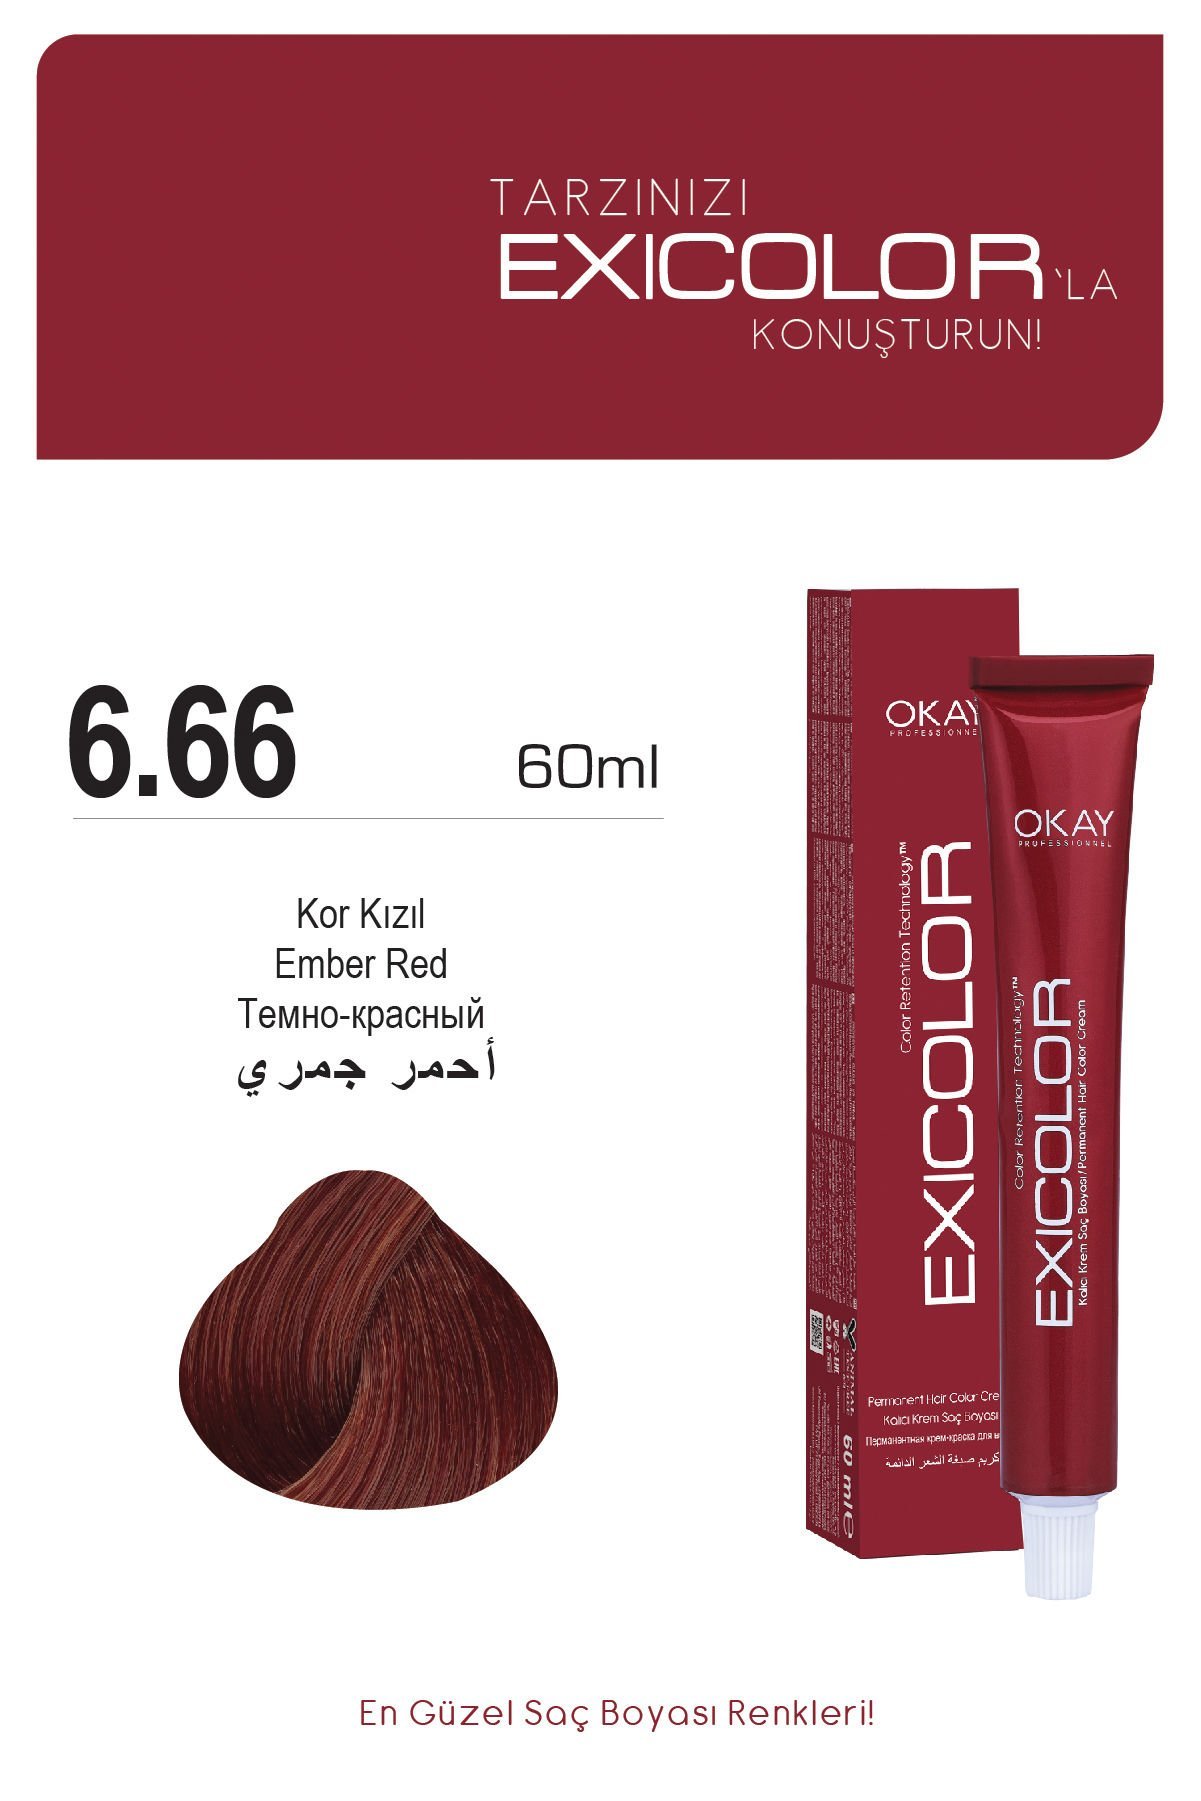 Exicolor 6.66 Kor Kızıl - Kalıcı Krem Saç Boyası 60 ml Tüp